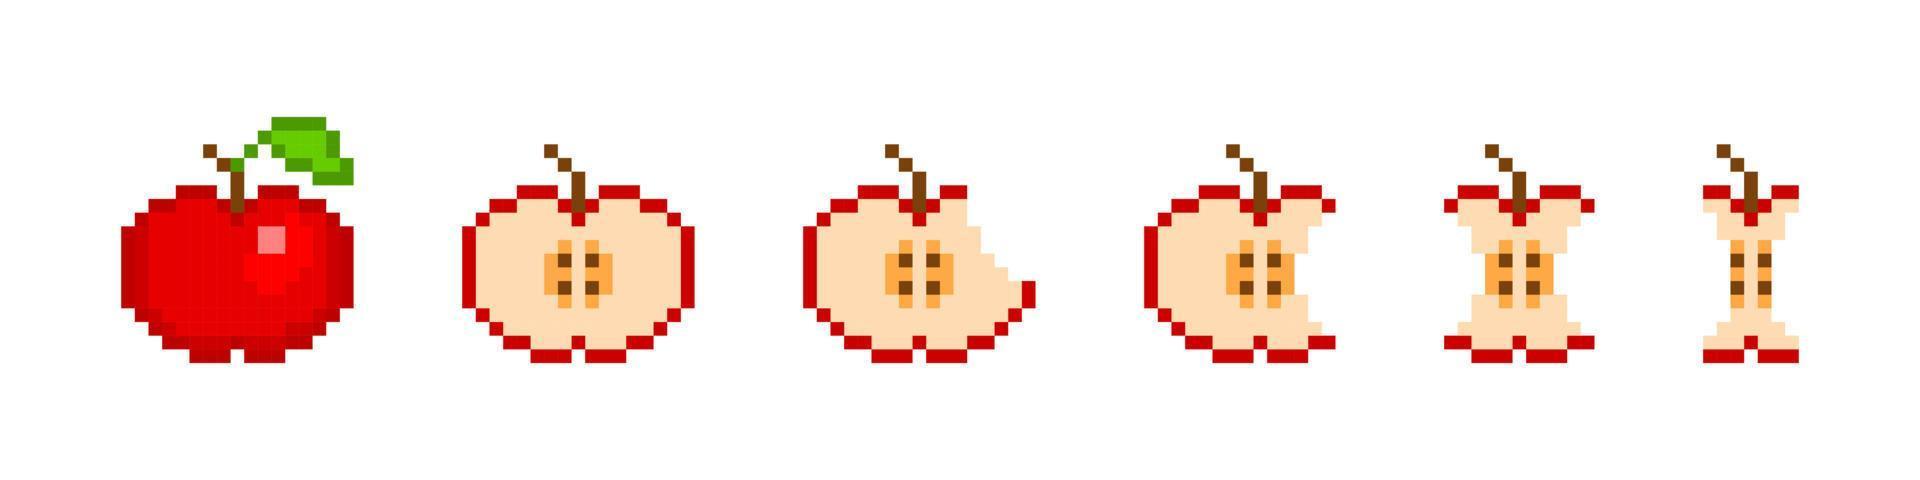 animation de manger des pommes pixel. le fruit rouge 8 bits disparaît lentement morceau par morceau et la tige du vecteur reste. étapes de mordre des pièces et des tranches pour le jeu vectoriel